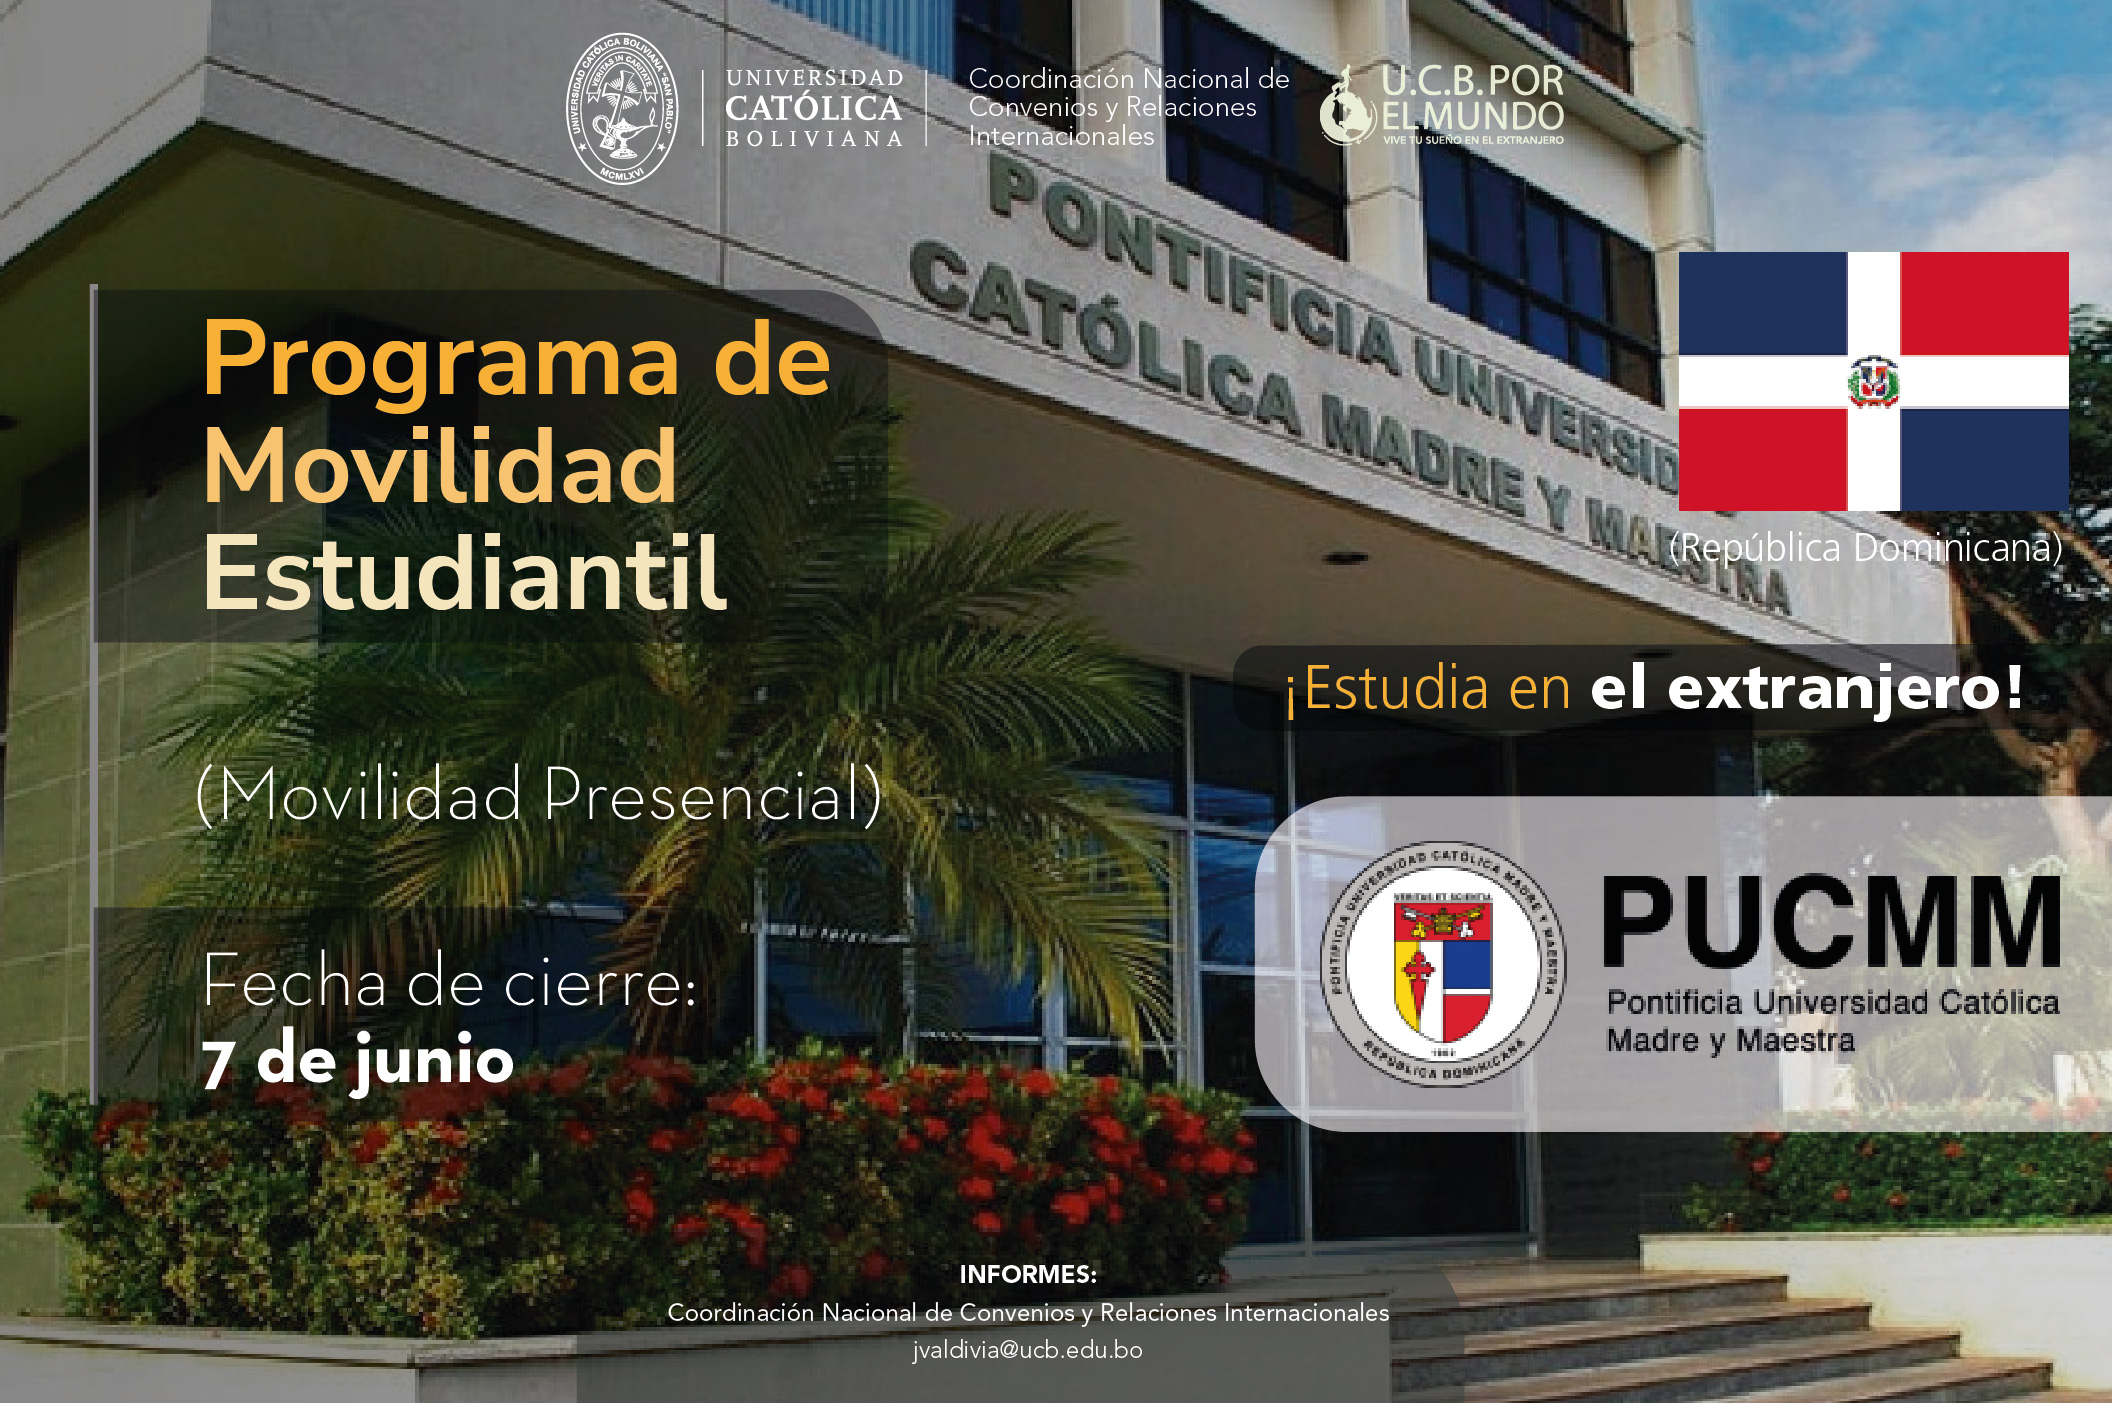 El Programa de Movilidad Estudiantil UCB por el Mundo cuenta con cupos en la Pontificia Universidad Católica Madre y Maestra en República Dominicana.